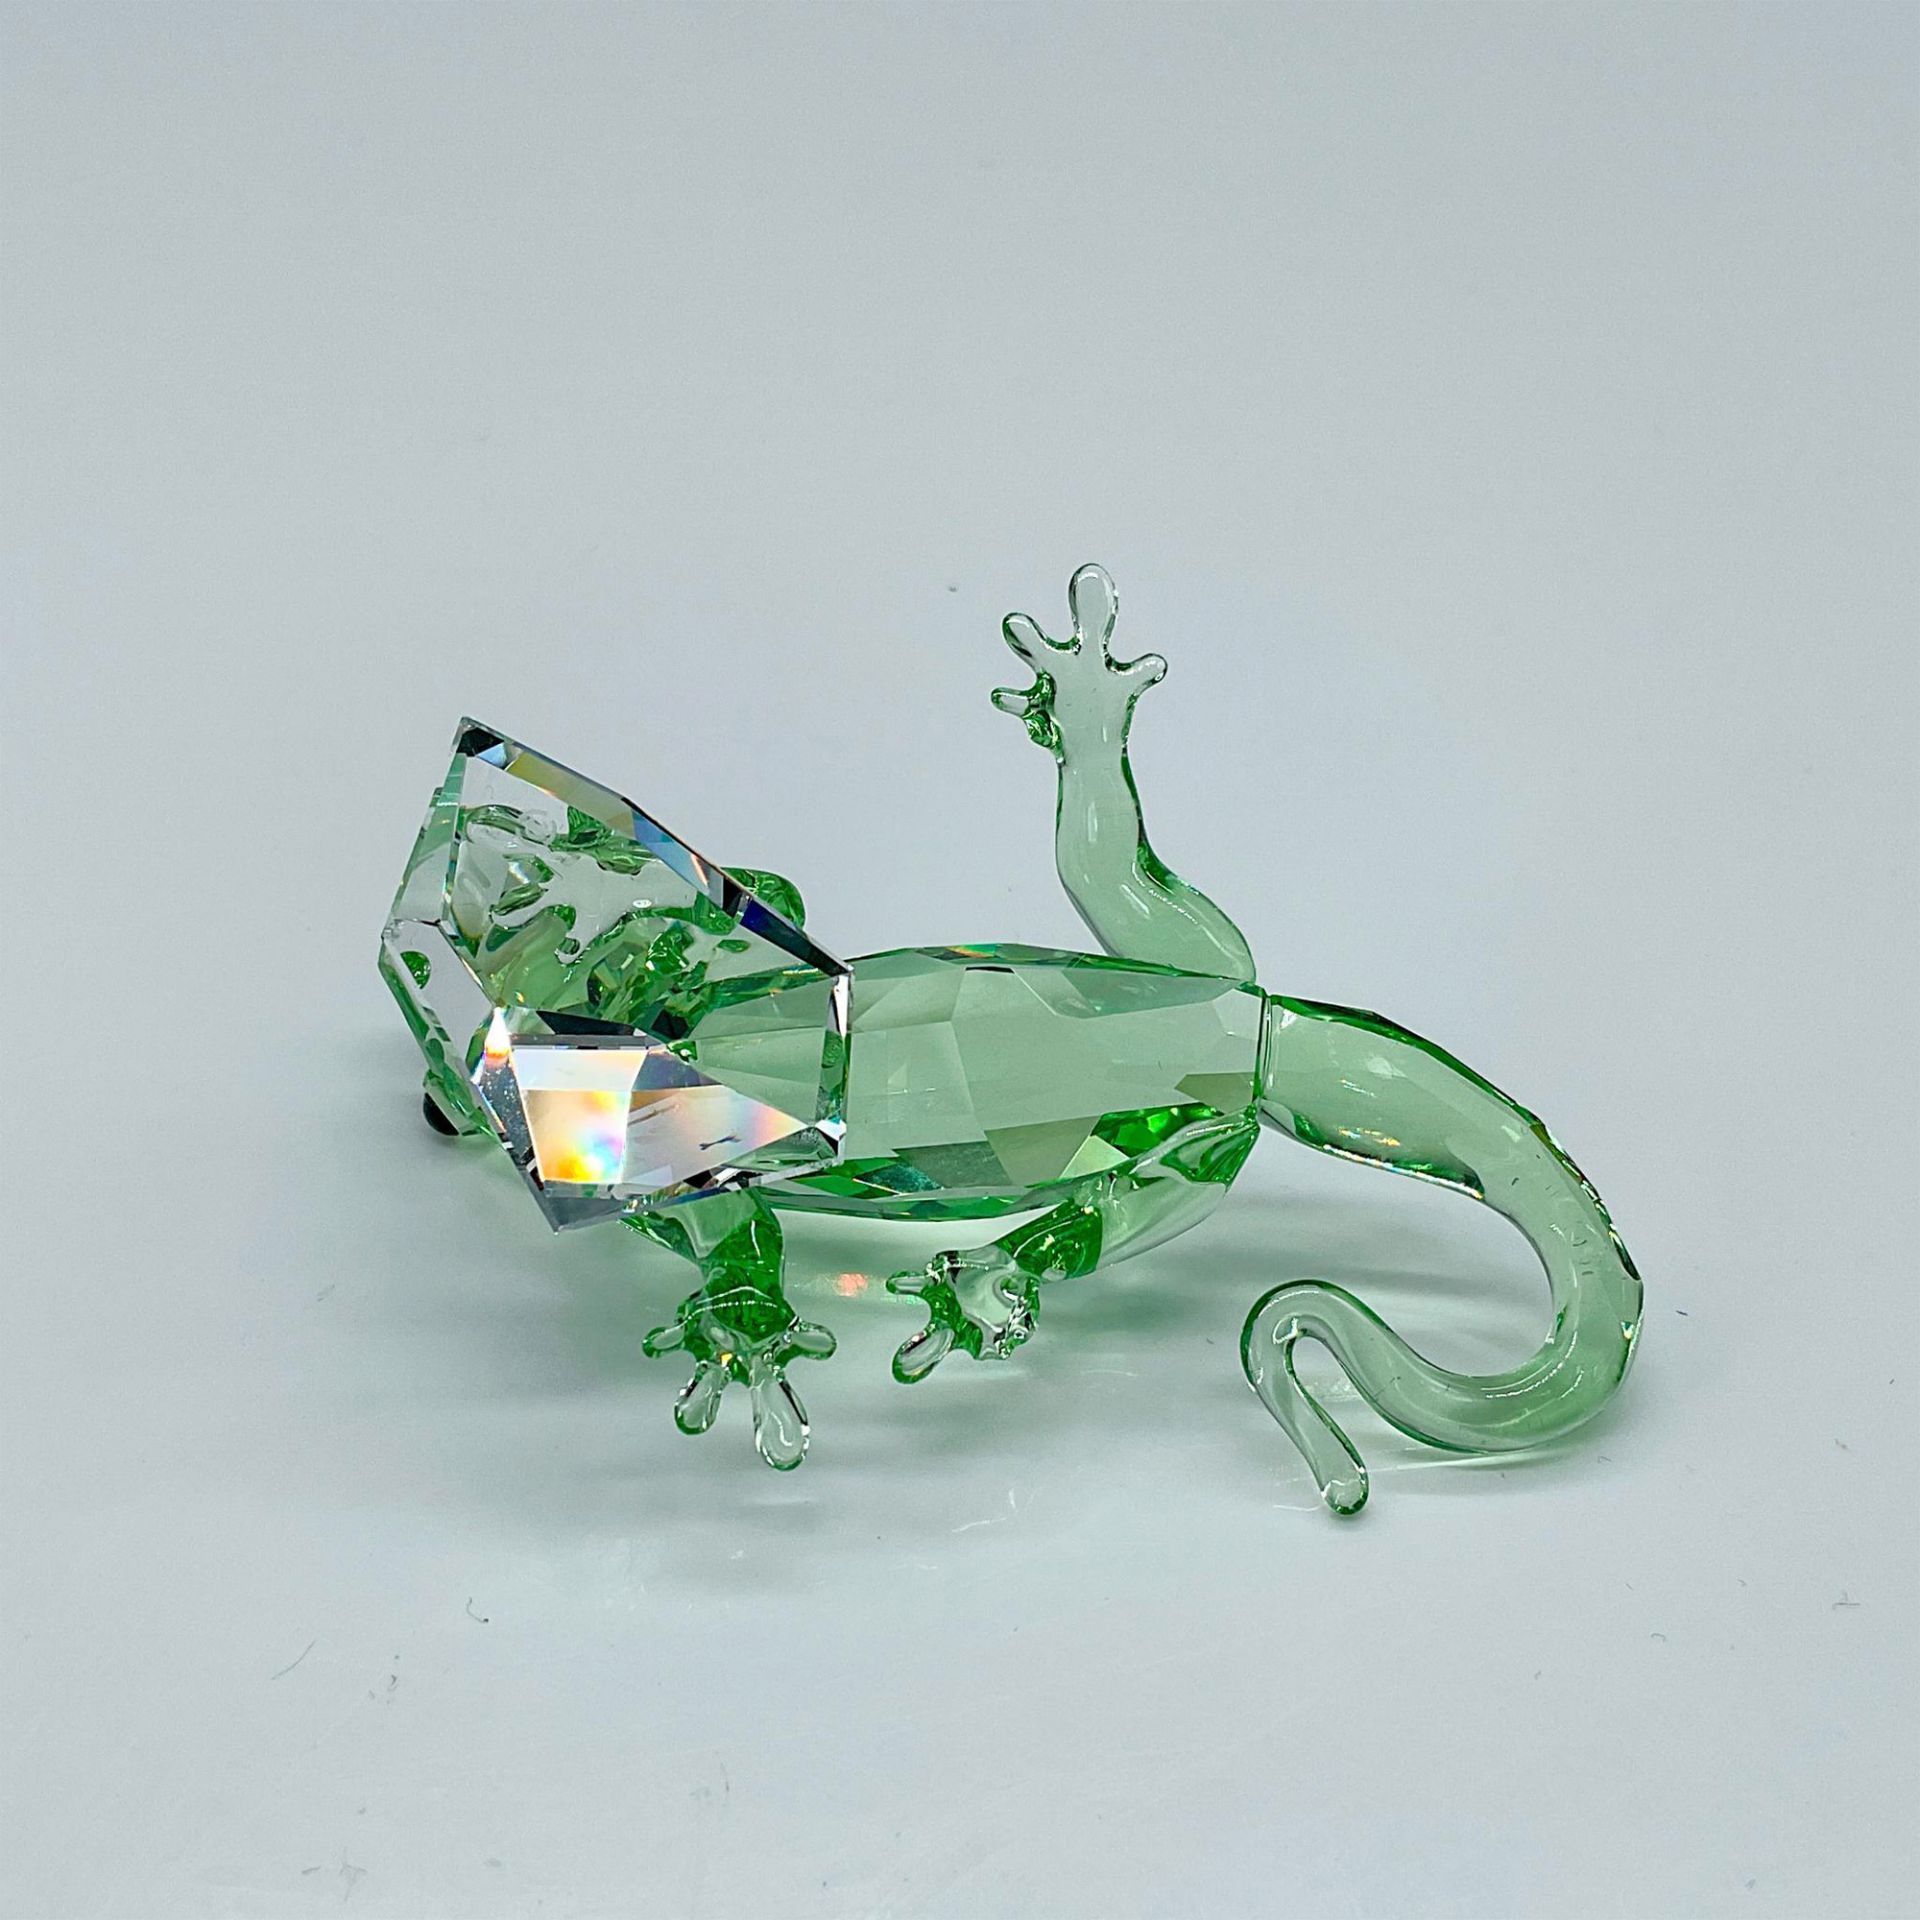 Swarovski Crystal Figurine, Gecko SCS Event Piece - Image 3 of 4